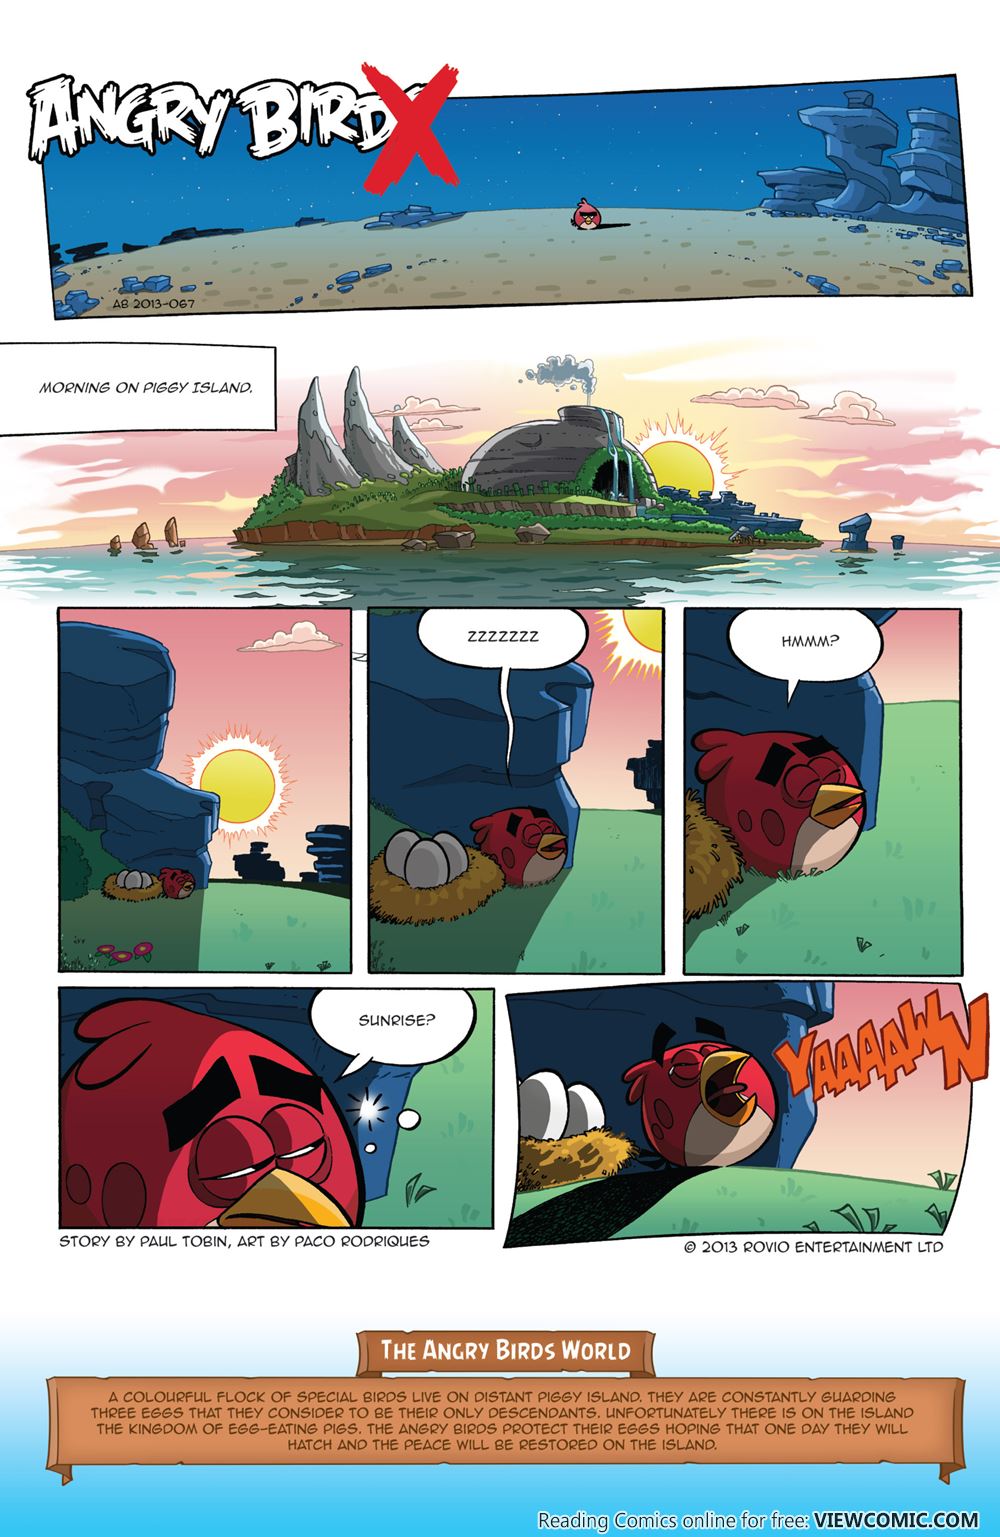 Angry Birds Comic Porn - Angry Birds Comics V2 001 2016 | Read Angry Birds Comics V2 001 2016 comic  online in high quality. Read Full Comic online for free - Read comics  online in high quality .|viewcomiconline.com